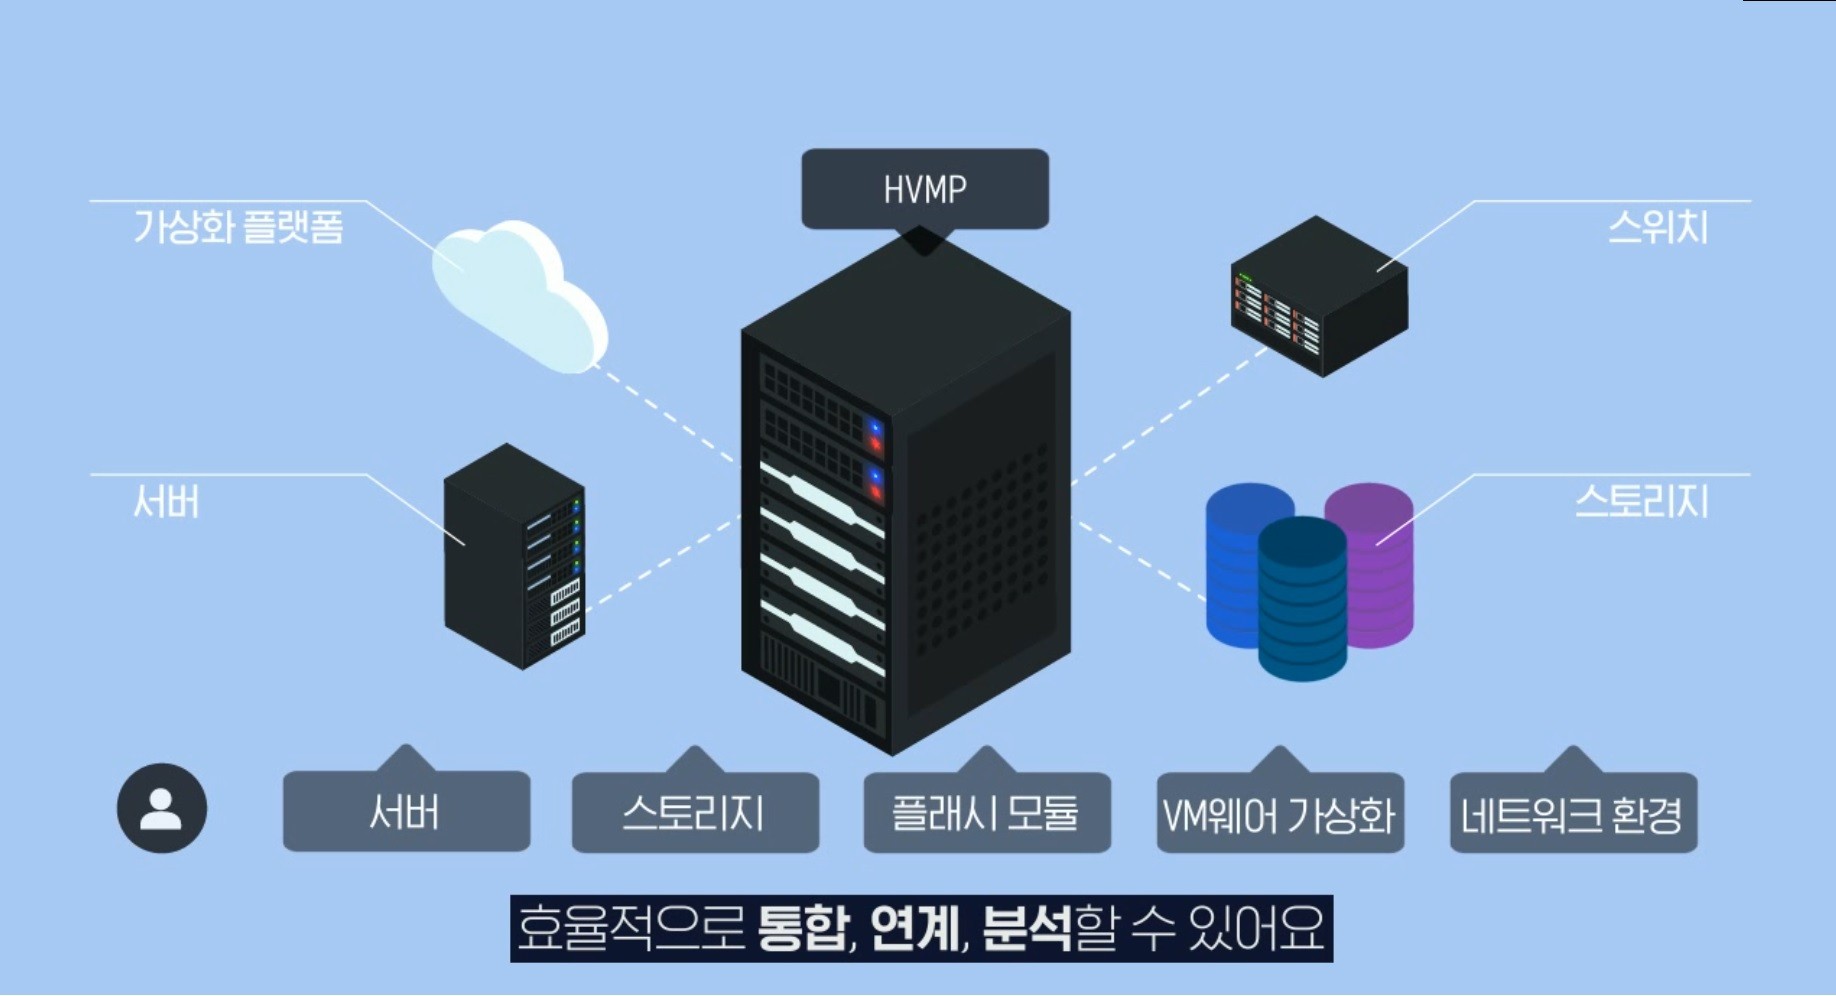 효성인포메이션 영상전용 컨버지드 플랫폼 HVMP 서비스 구성도